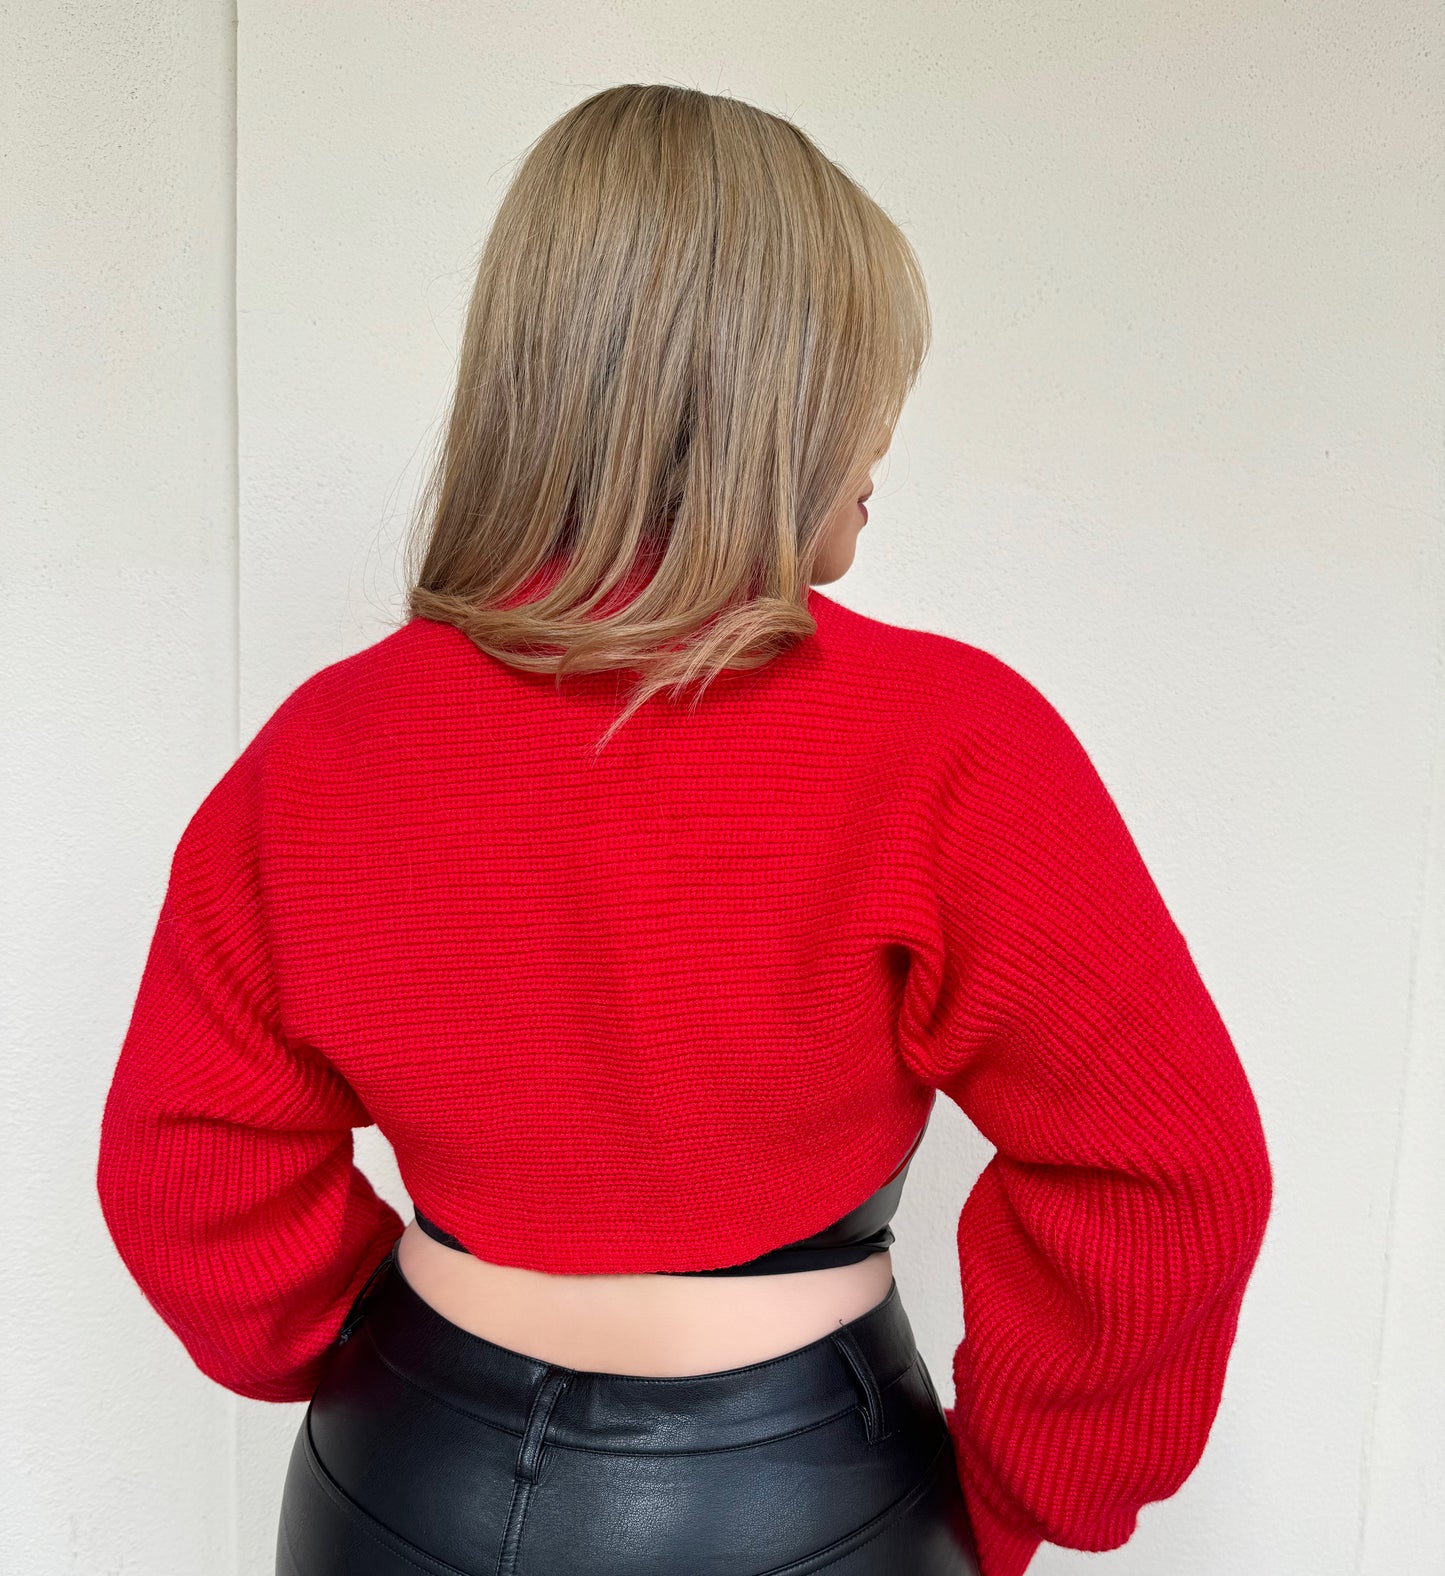 Cherry red knitted bolero